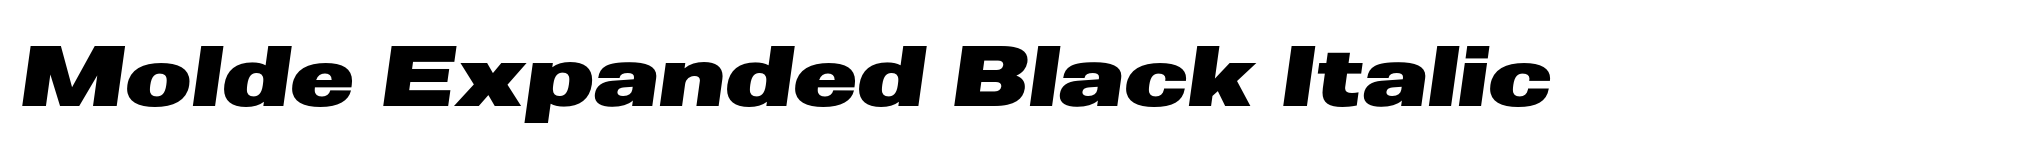 Molde Expanded Black Italic image